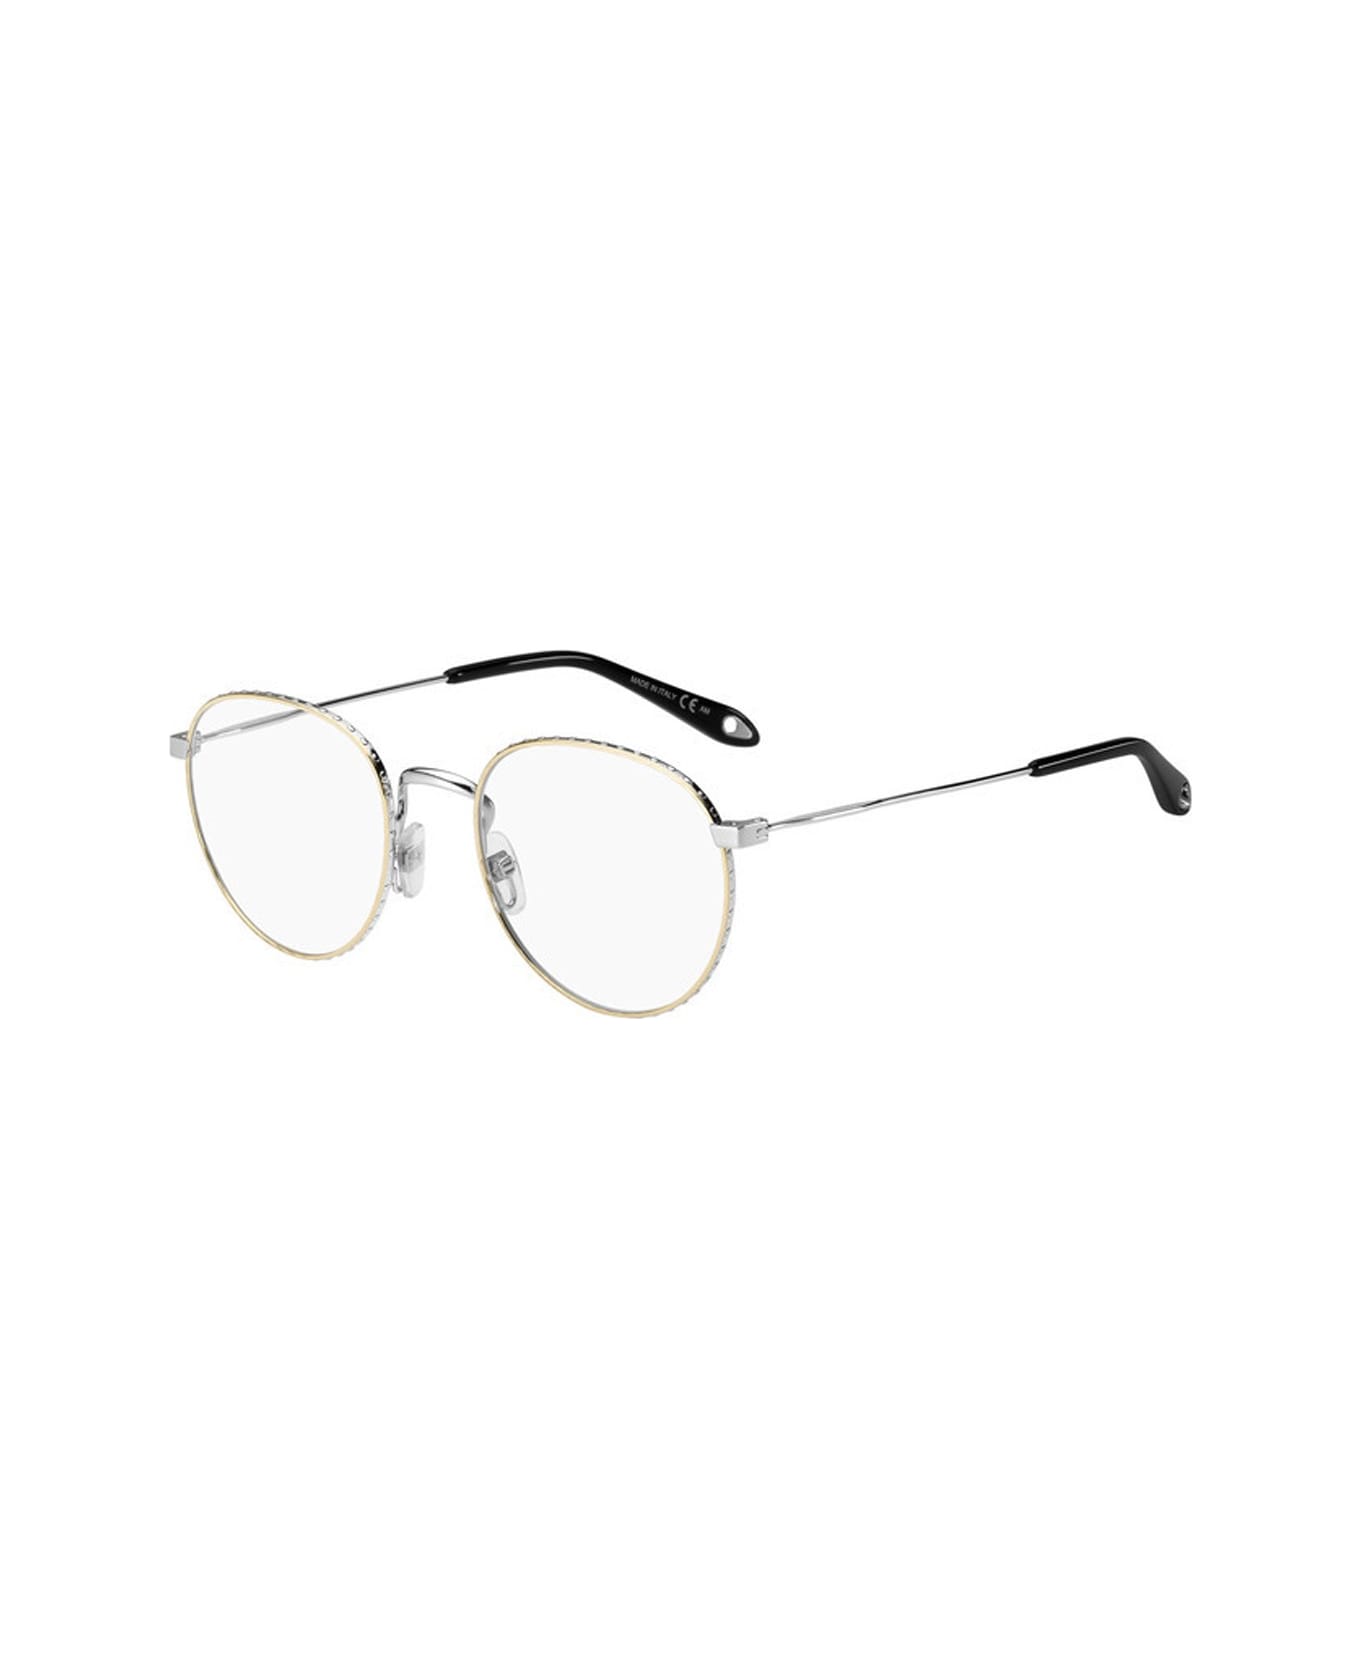 Givenchy Eyewear Gv 0072 Glasses - Oro